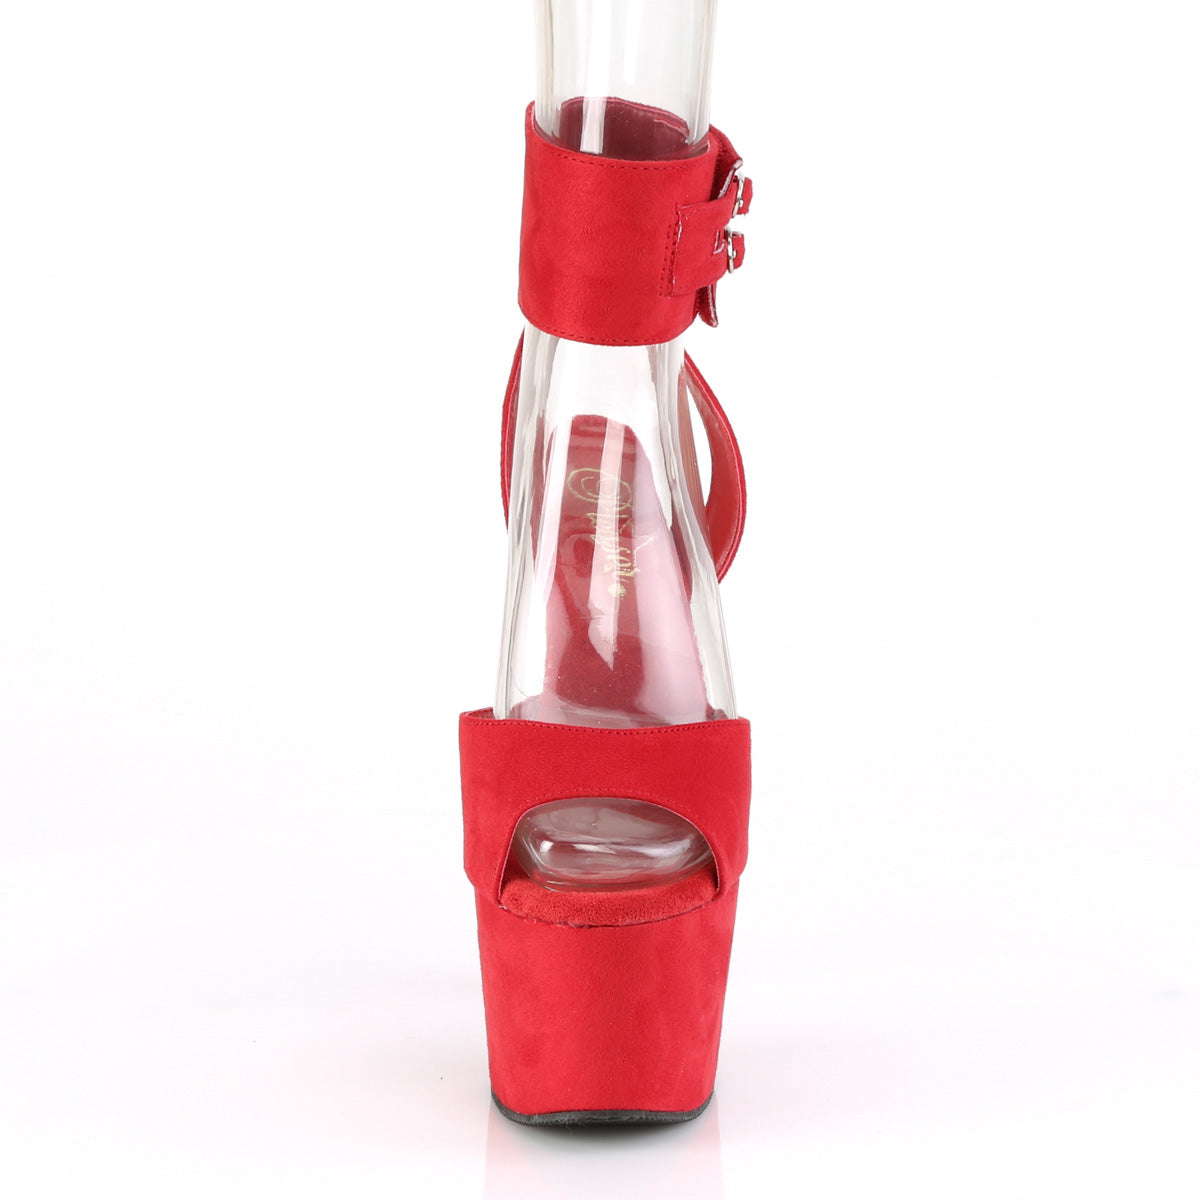 Pleaser Sandales pour femmes ADORE-791fs rouge en forme de faux daim / daim en faux rouge